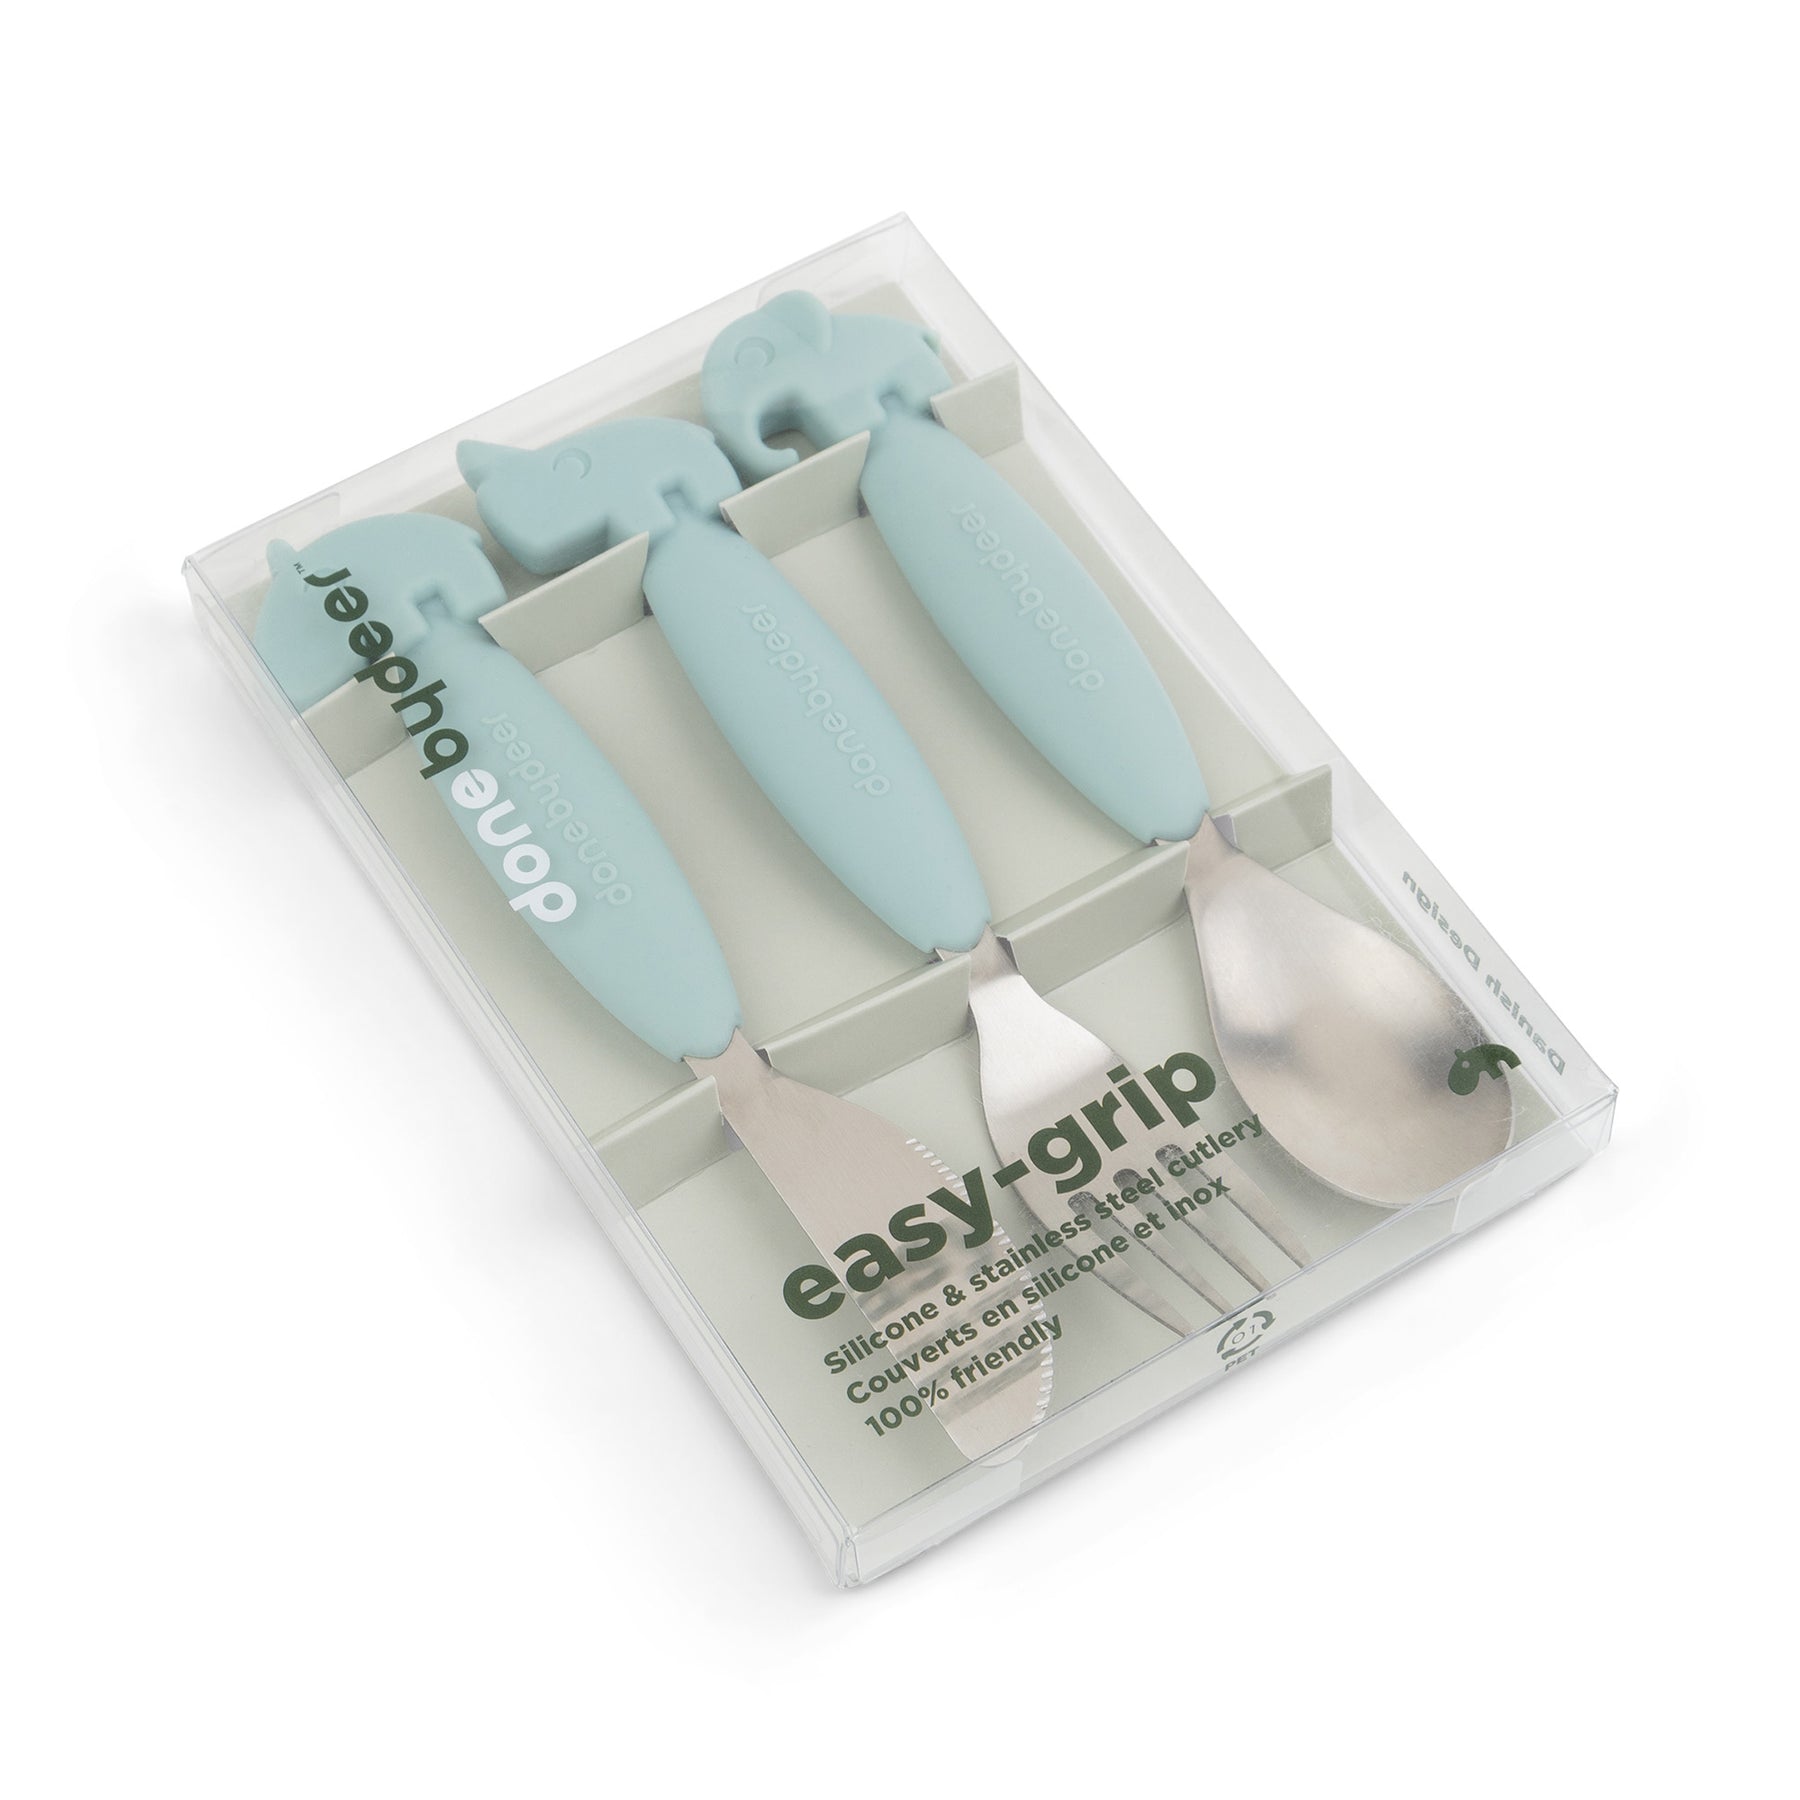 Easy-grip cutlery set - Deer friends - Blue - Packaging